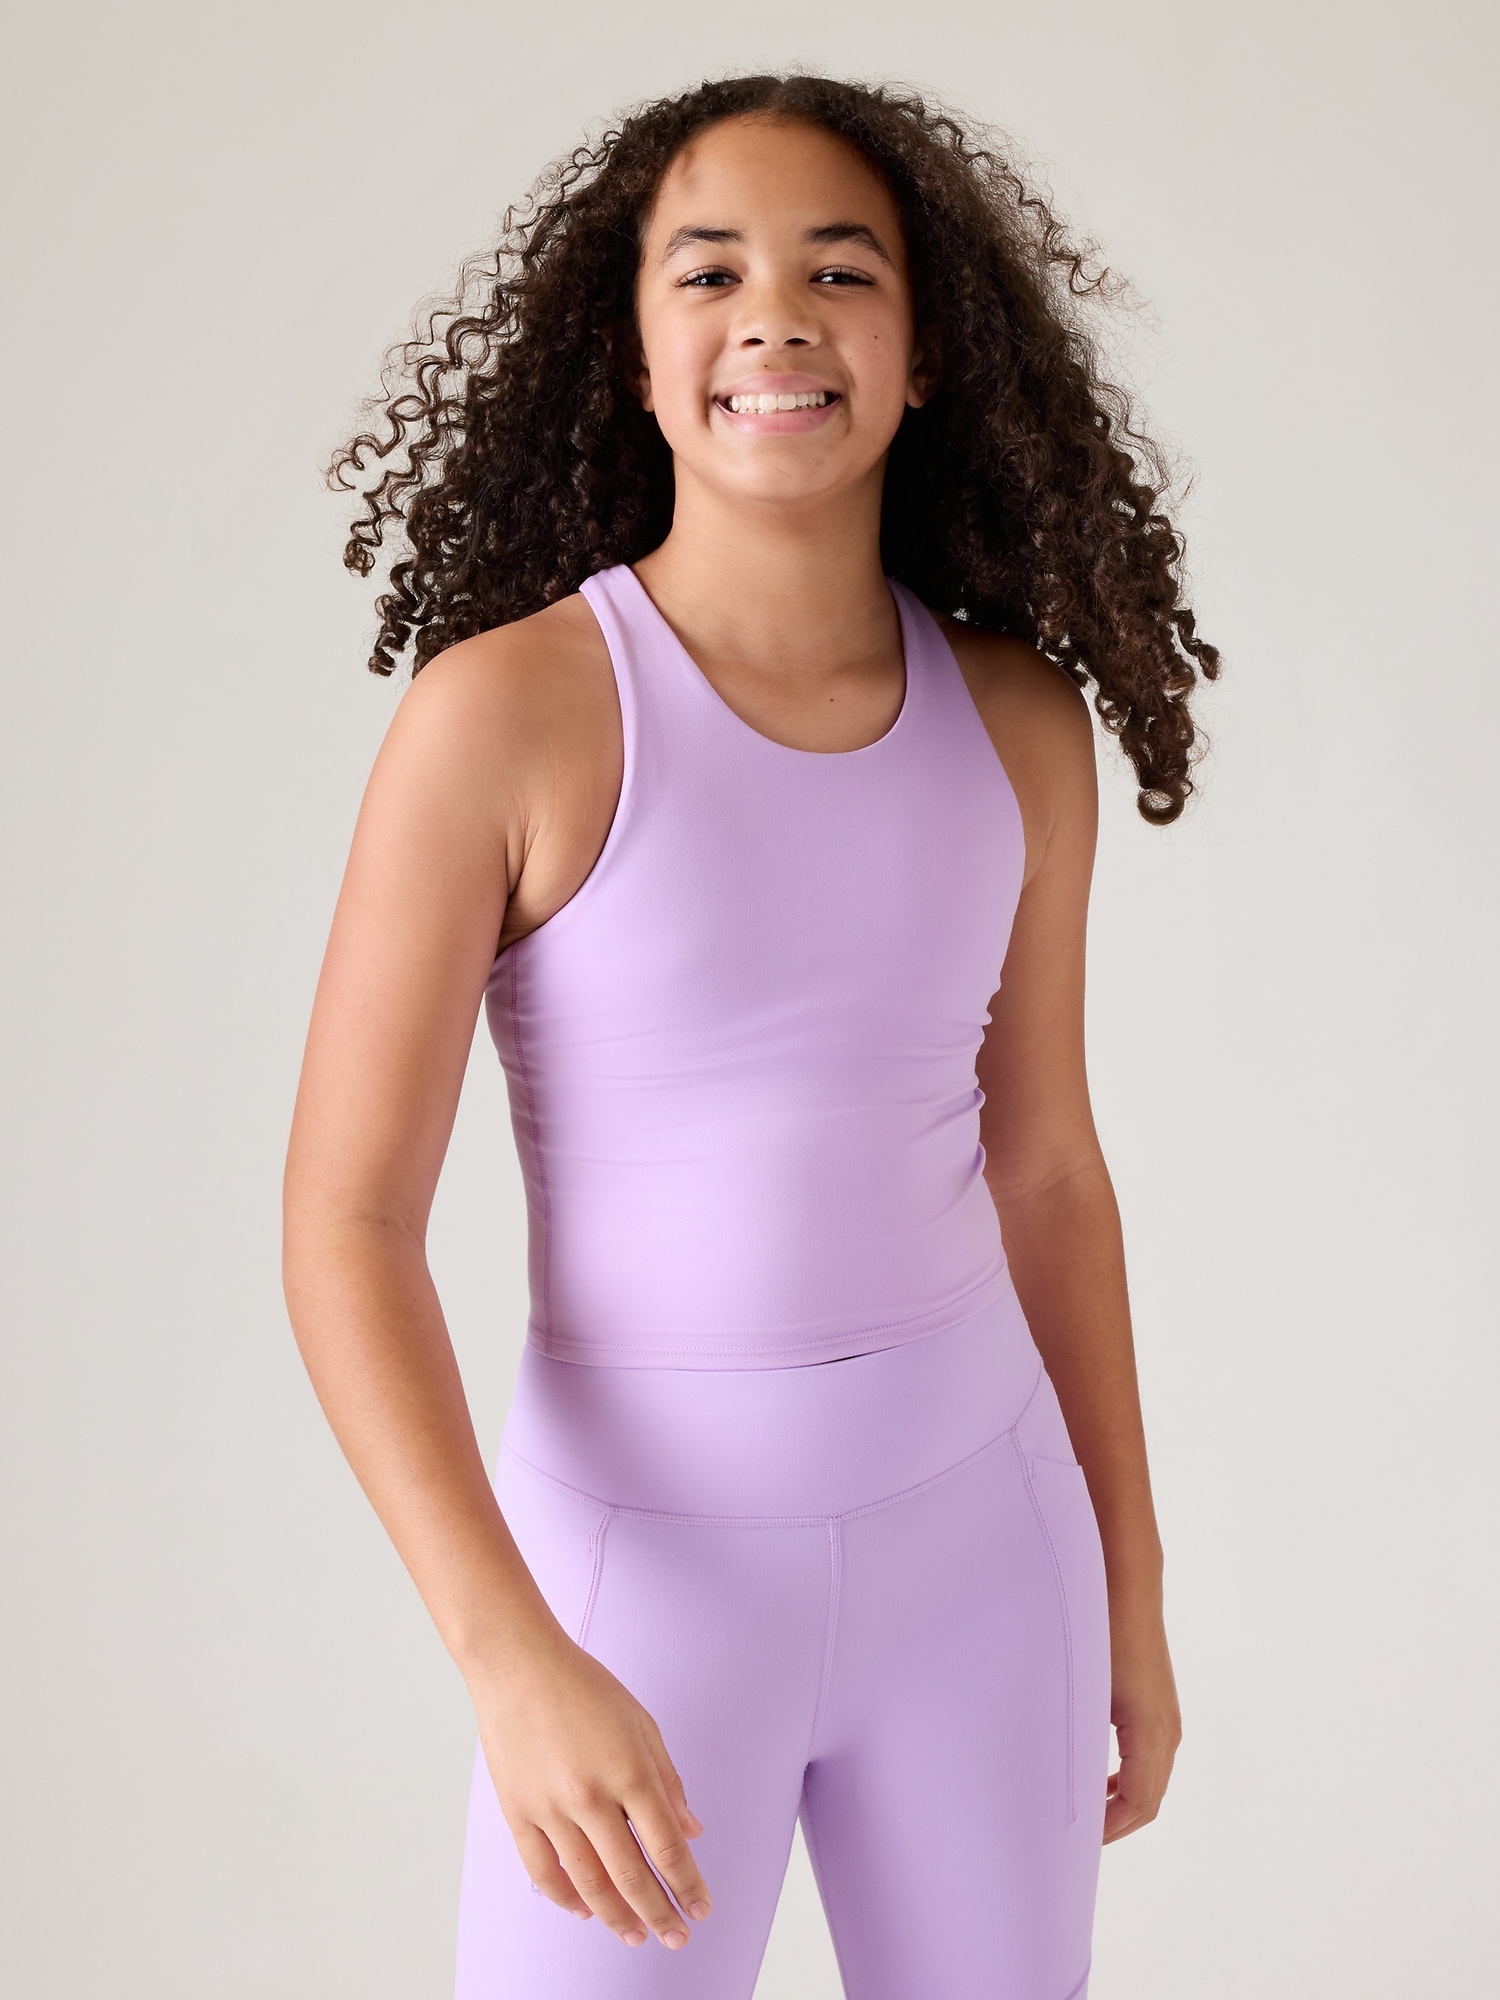 Athleta Girl Sports Bra Size XL 14 Pink T Back Strap Nylon Polyester Spandex